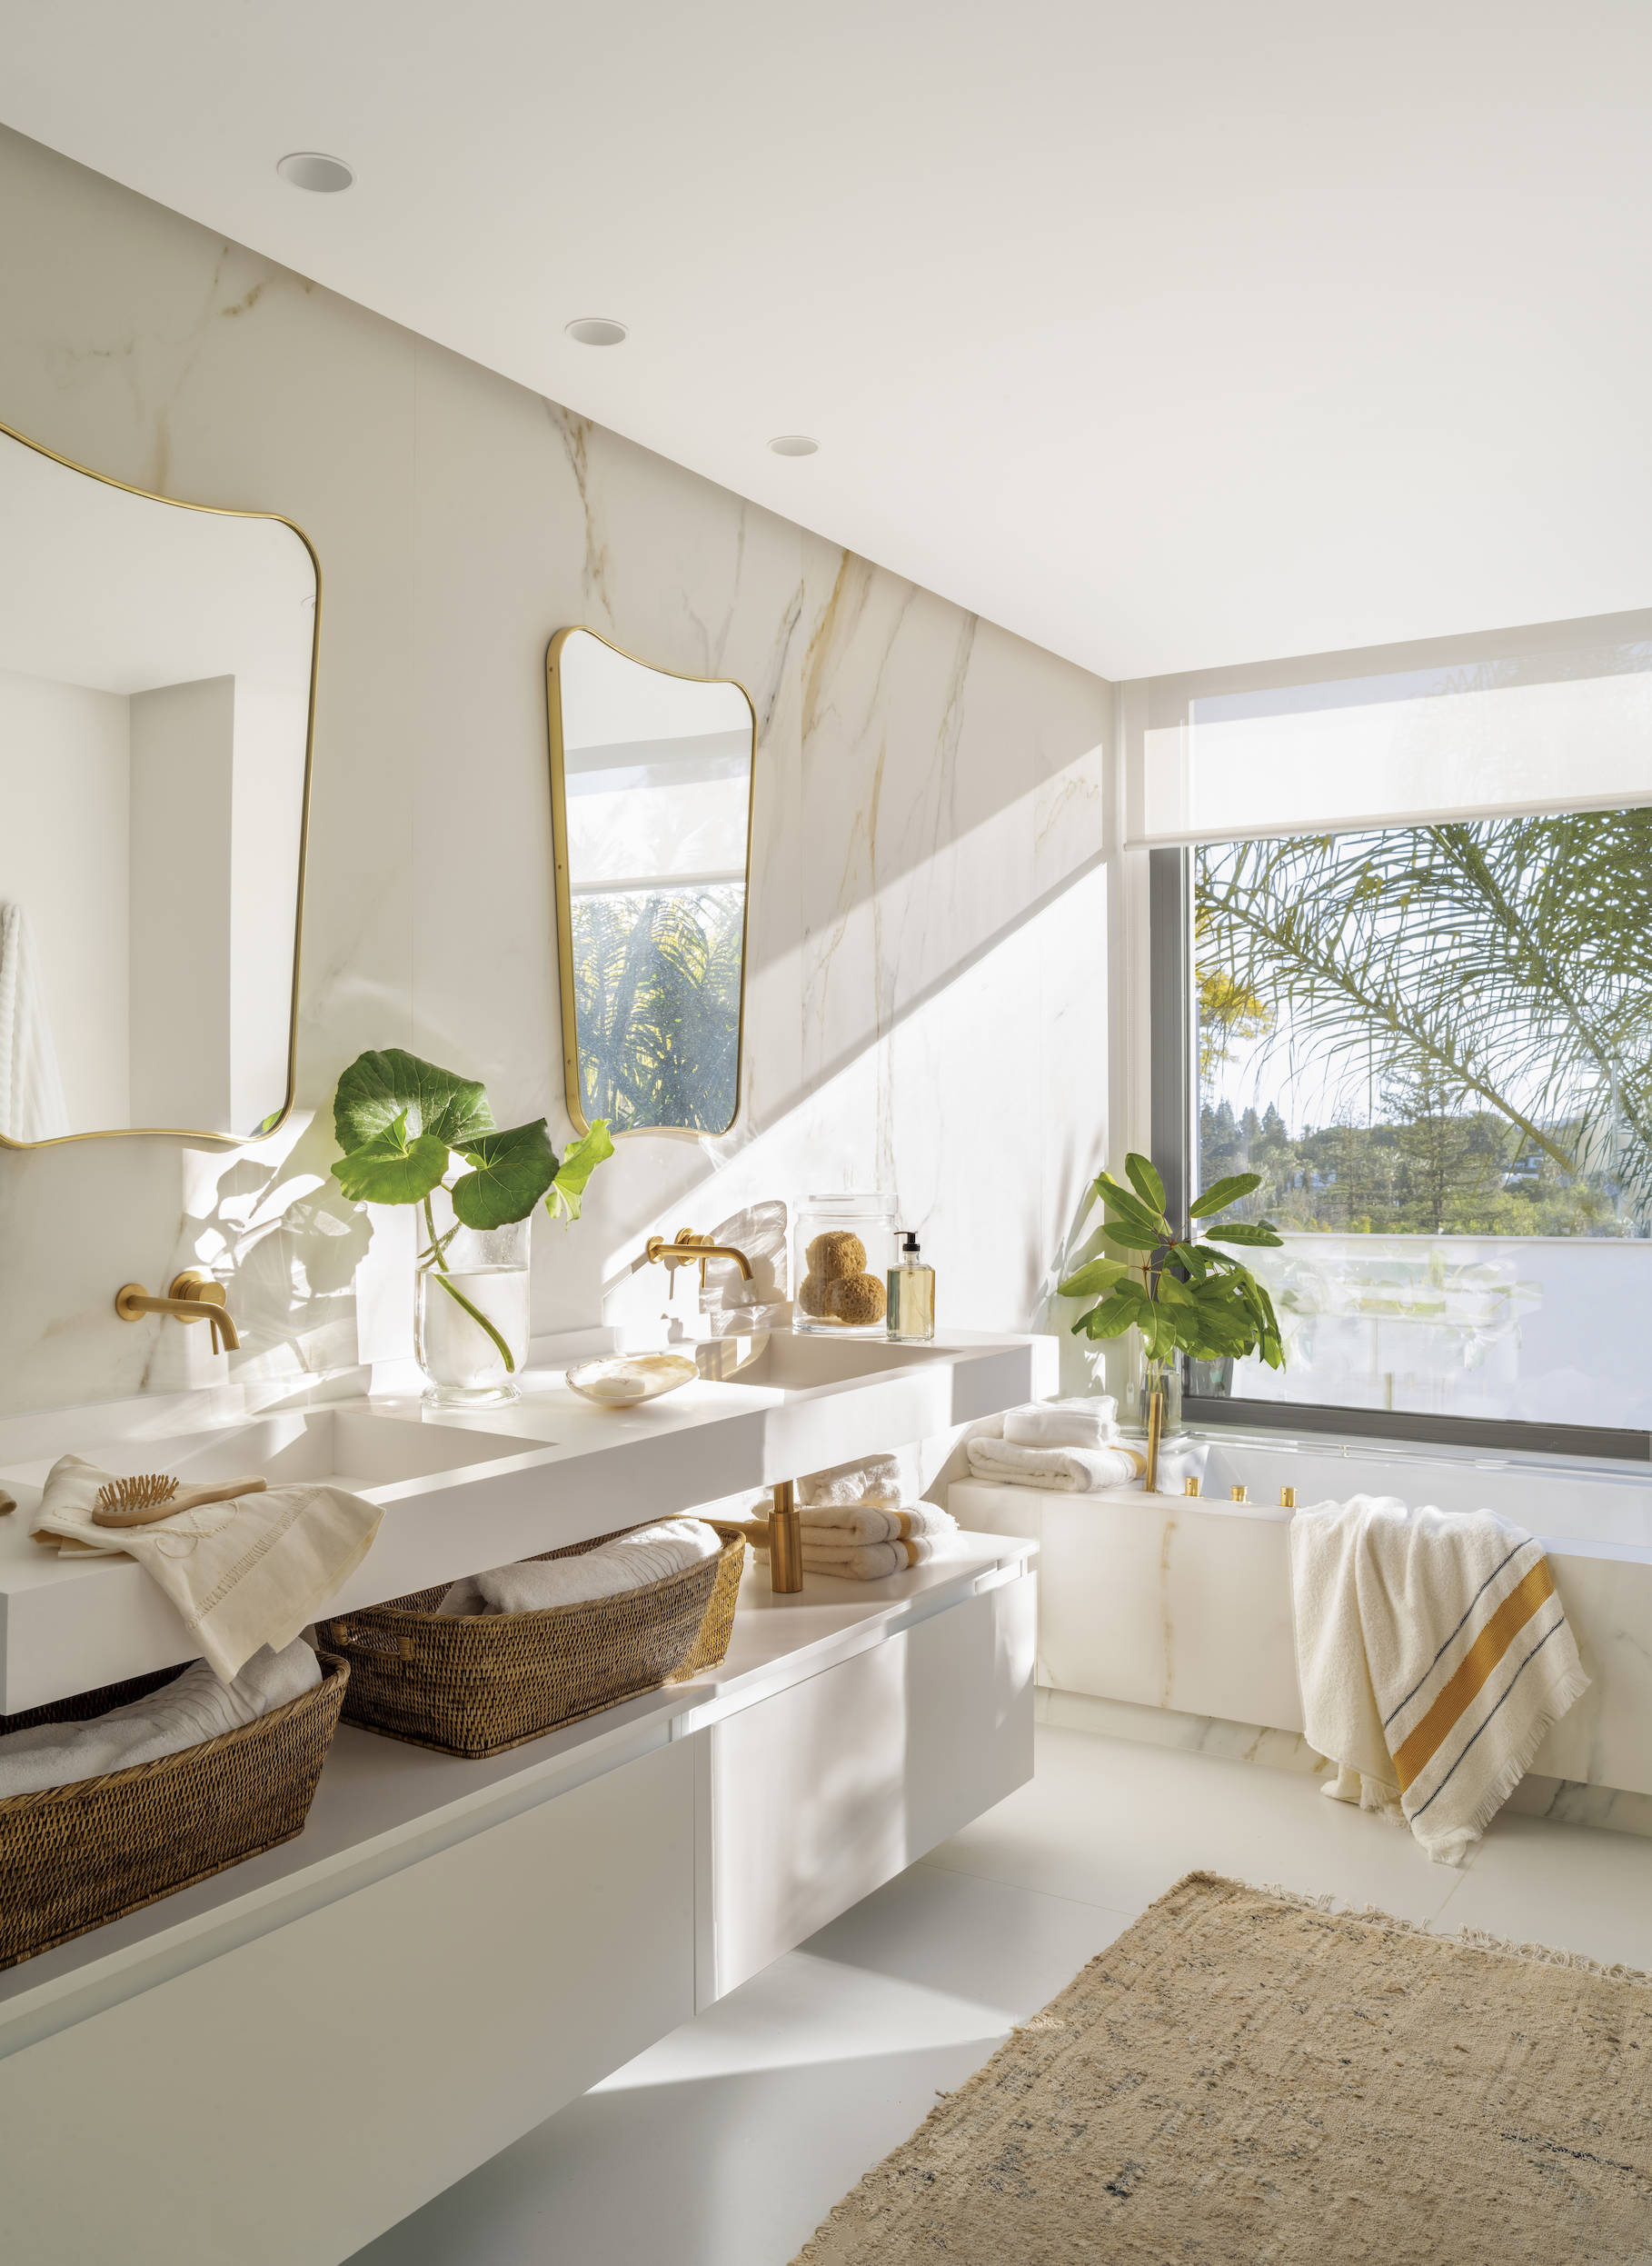 Baño moderno con mueble blanco y paredes de ma´rmol